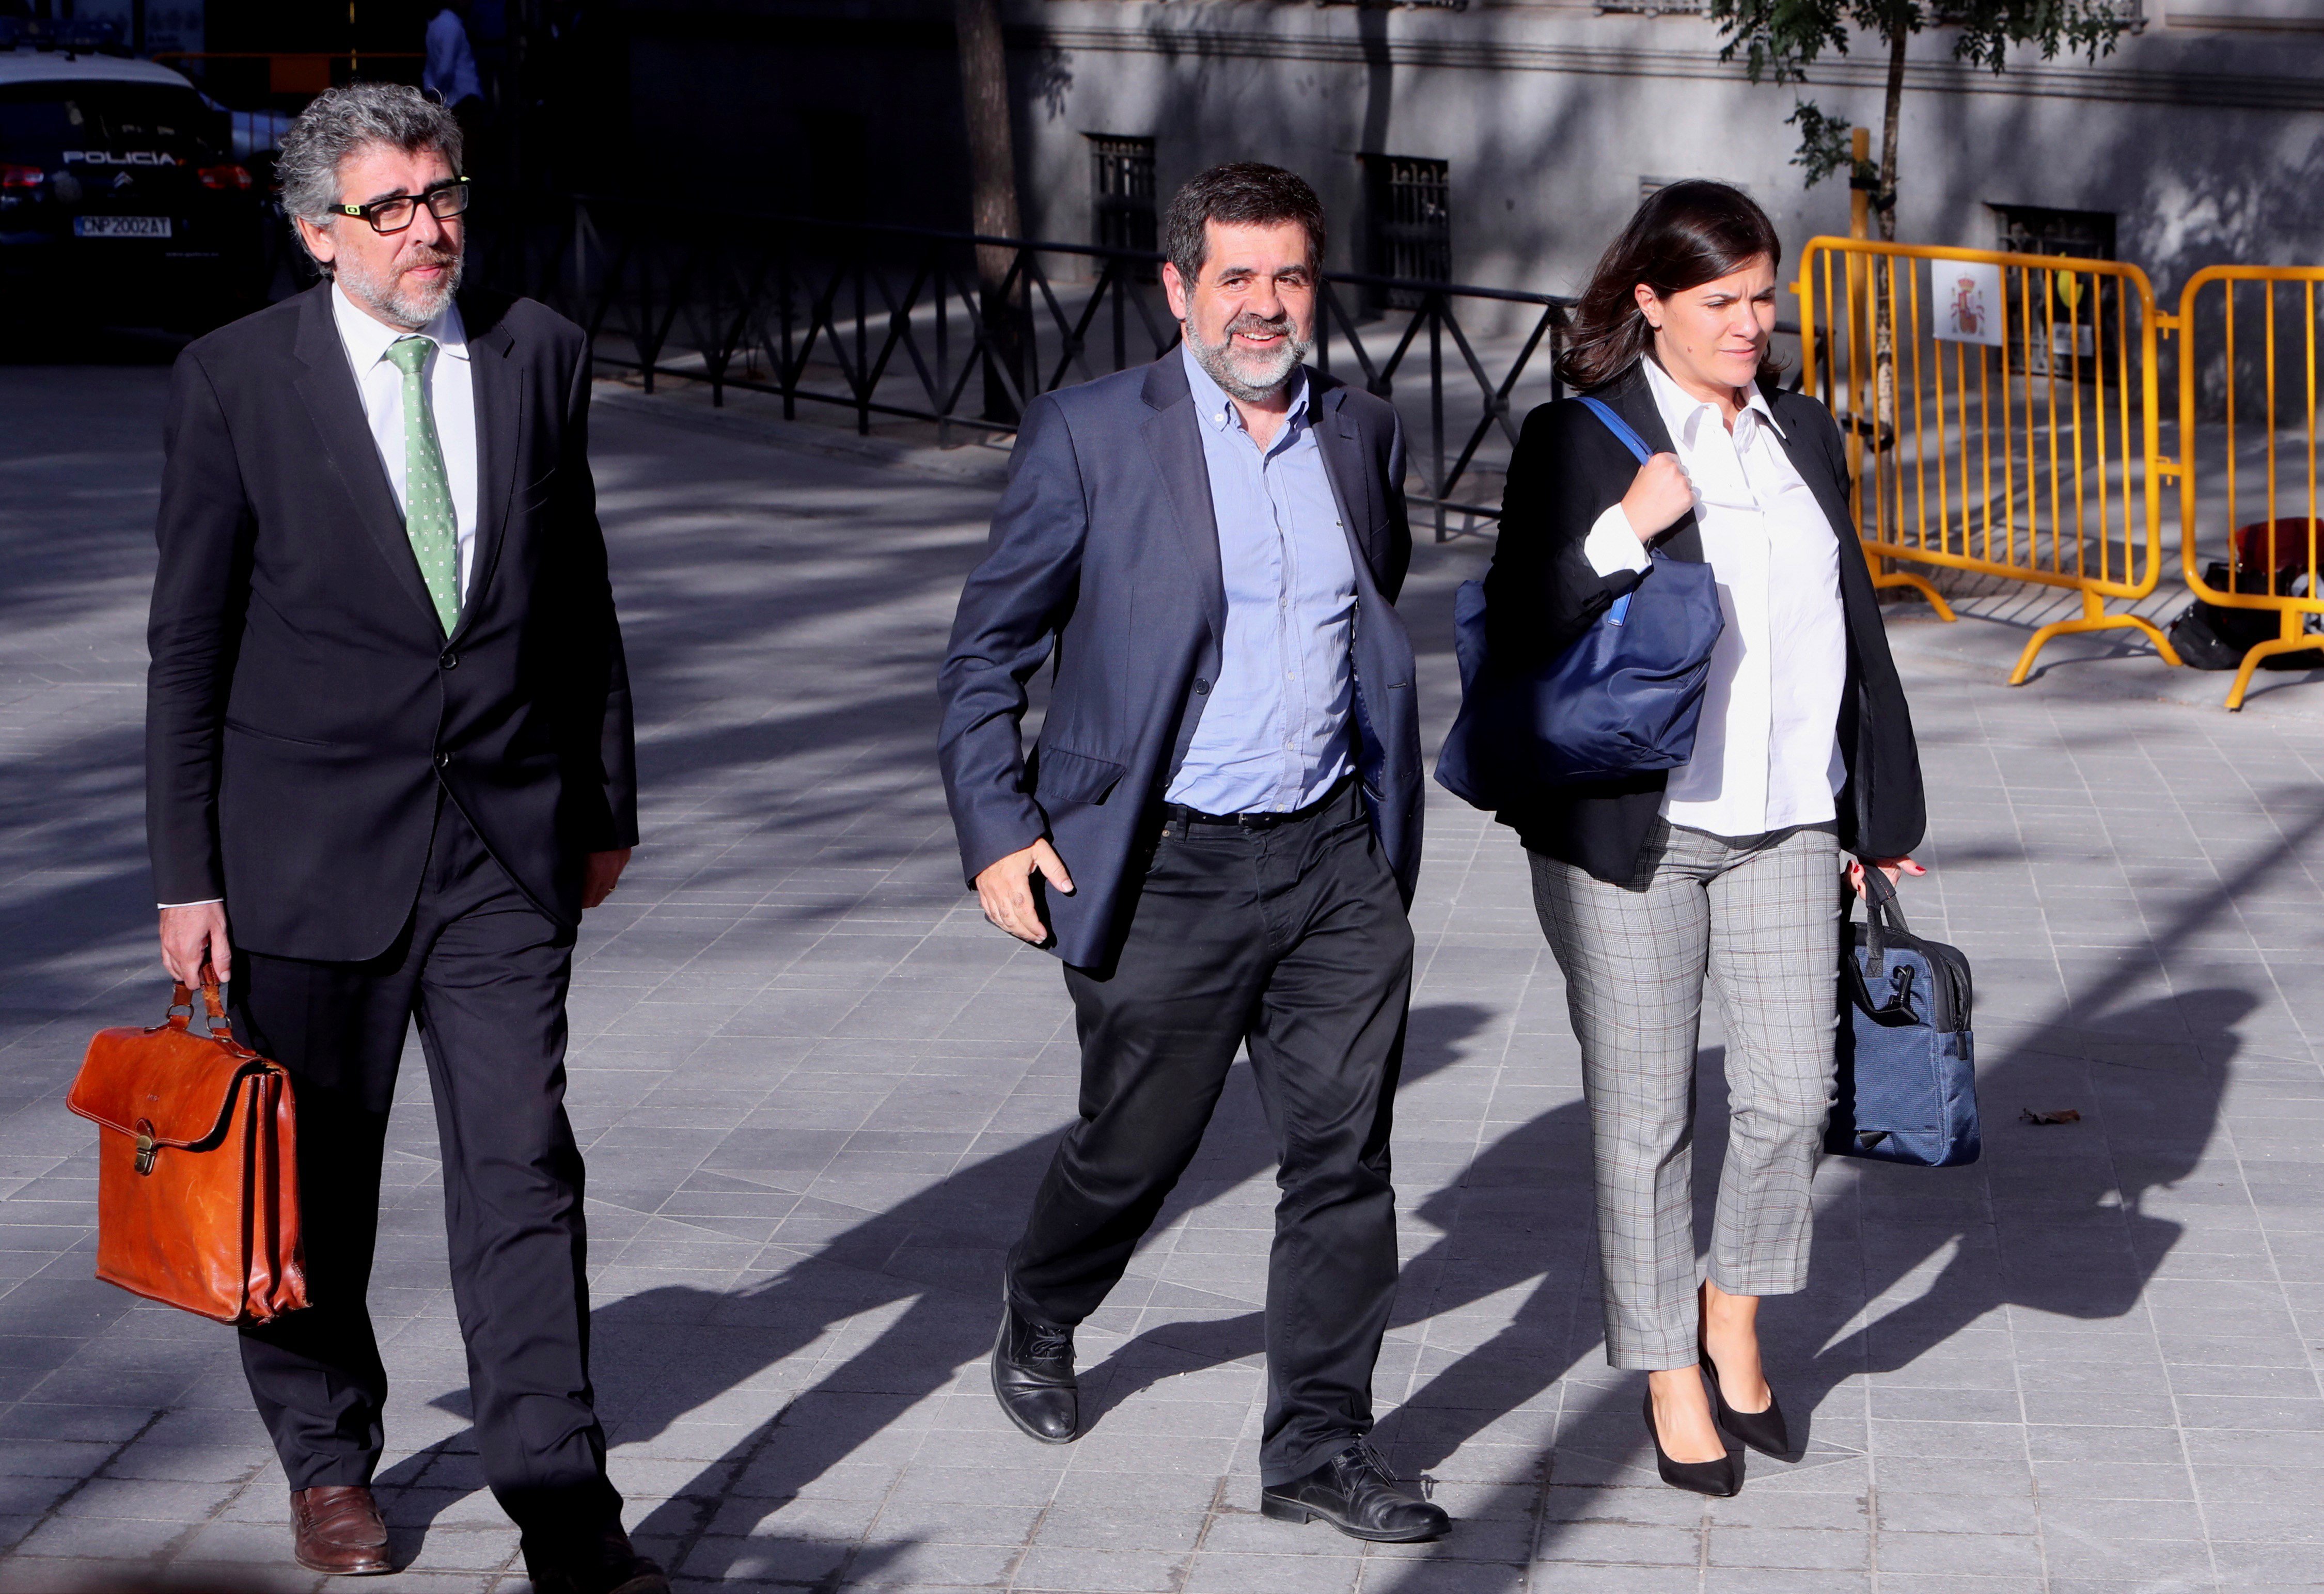 Jordi Sànchez presents appeal to Spain's Supreme Court